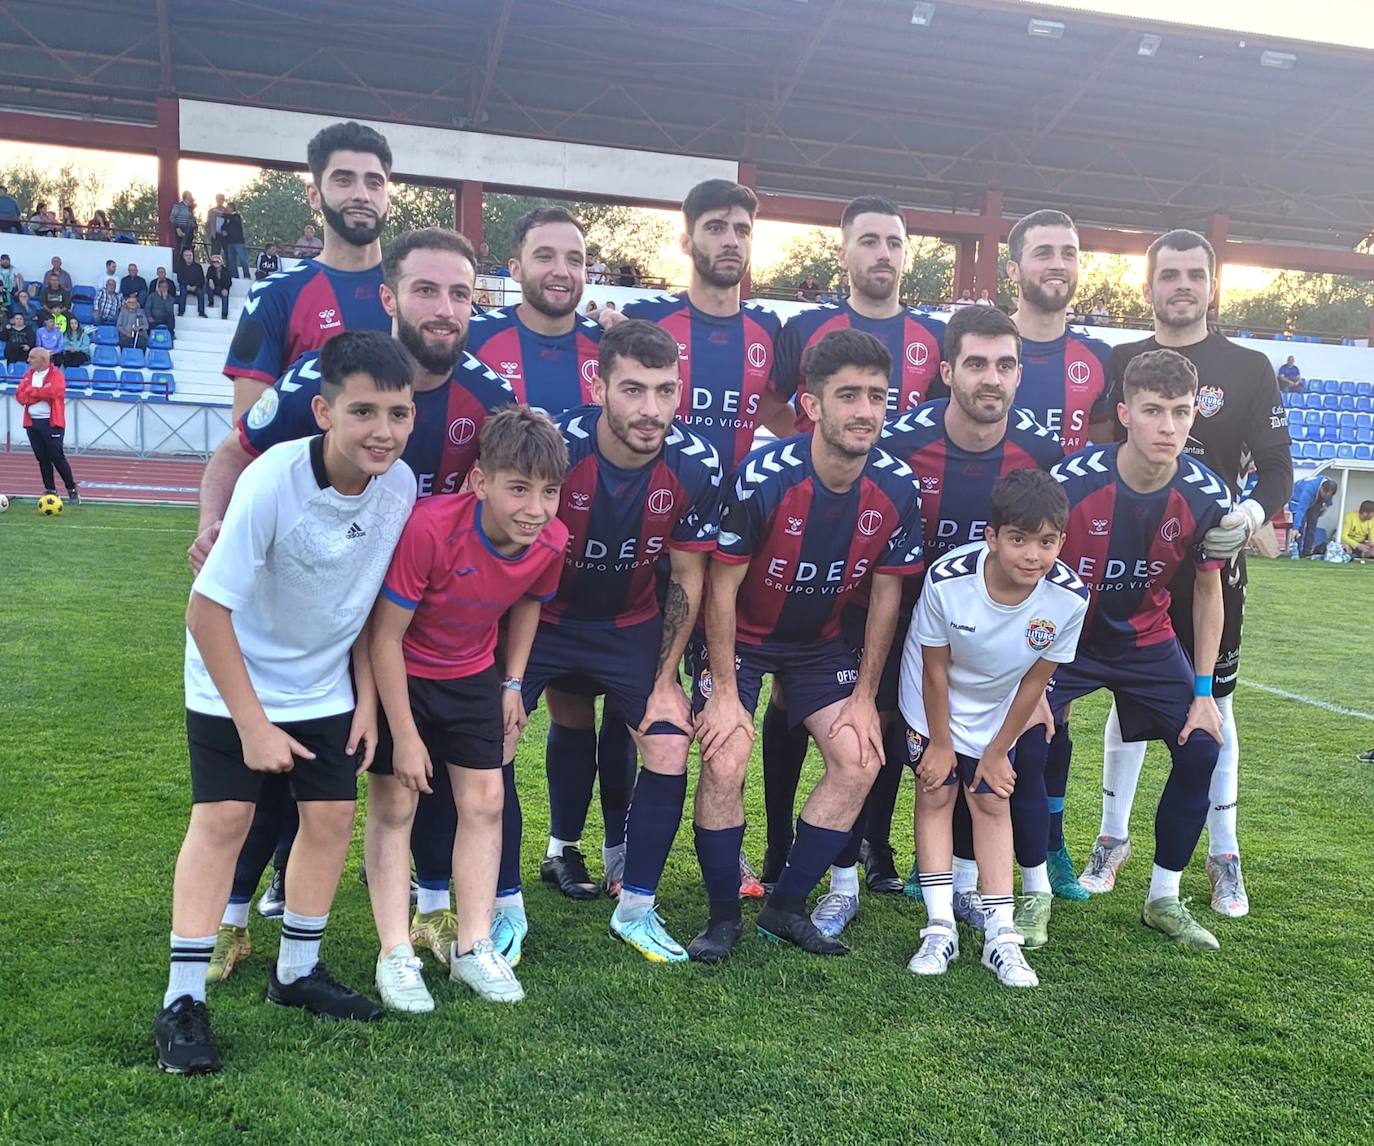 El Iliturgi ajusticia al Fuensanta, 8-2, y allana el objetivo del ascenso a la División Andaluza de Fútbol